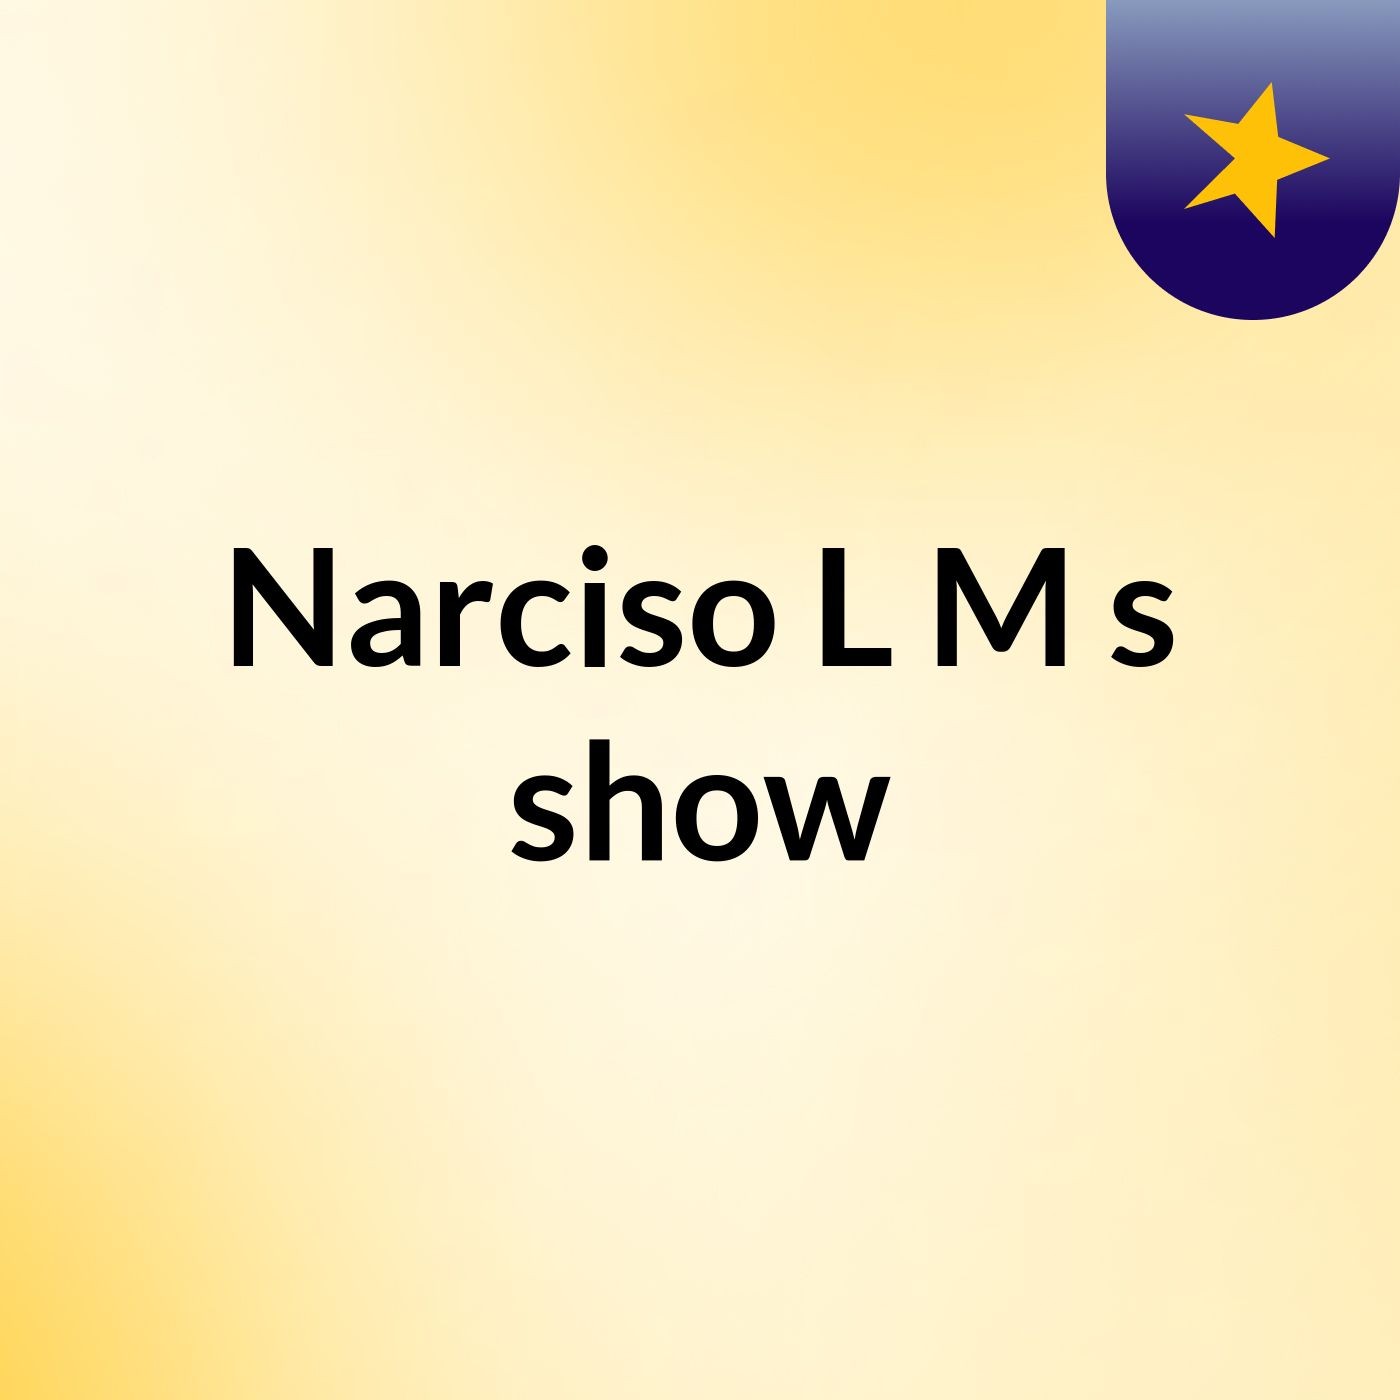 Narciso L M's show